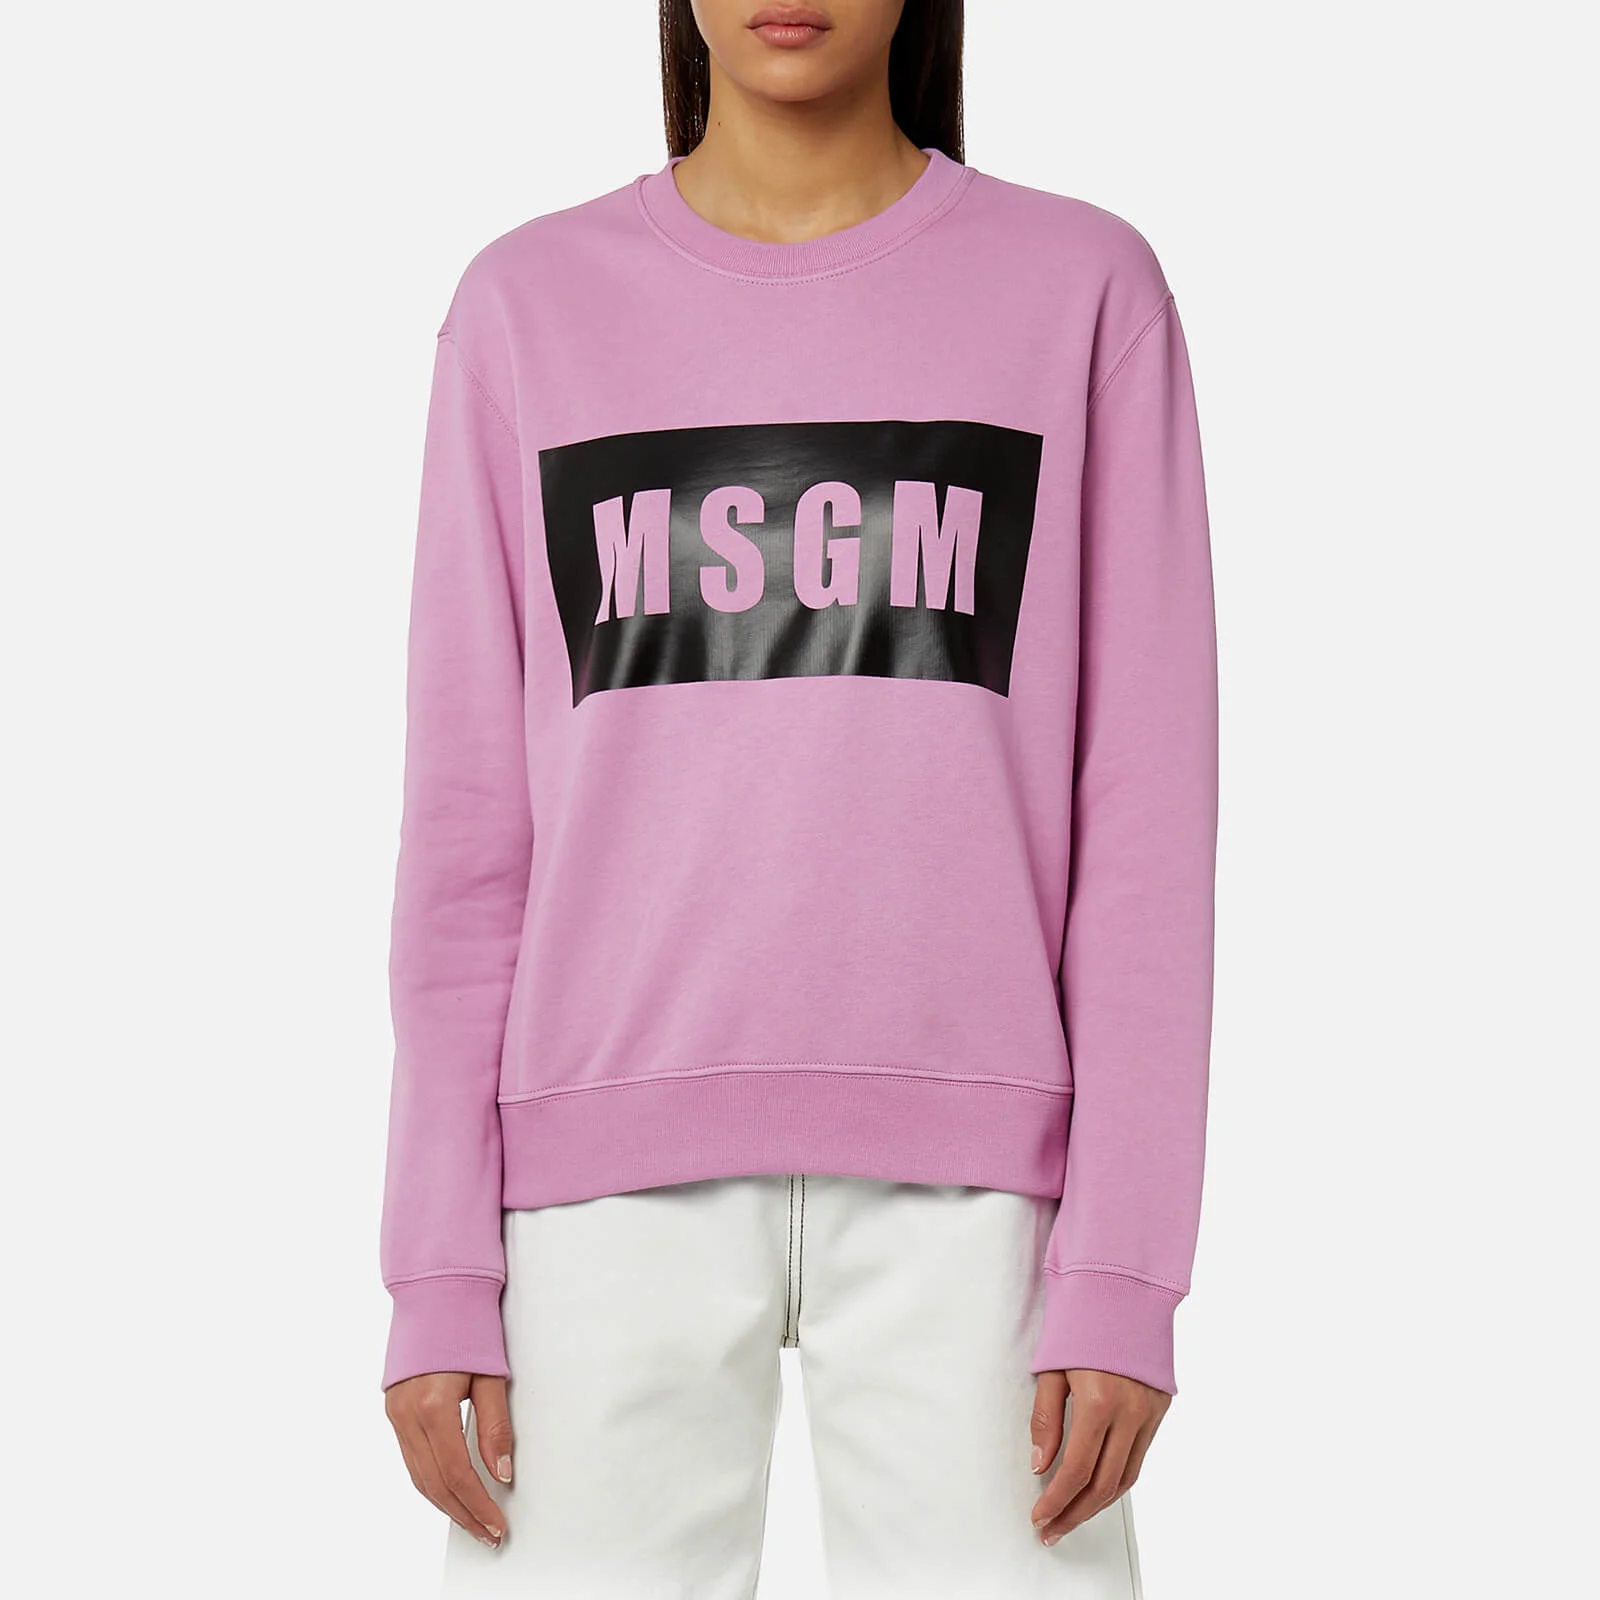 MSGM Women's Logo Sweatshirt - Pink Image 1